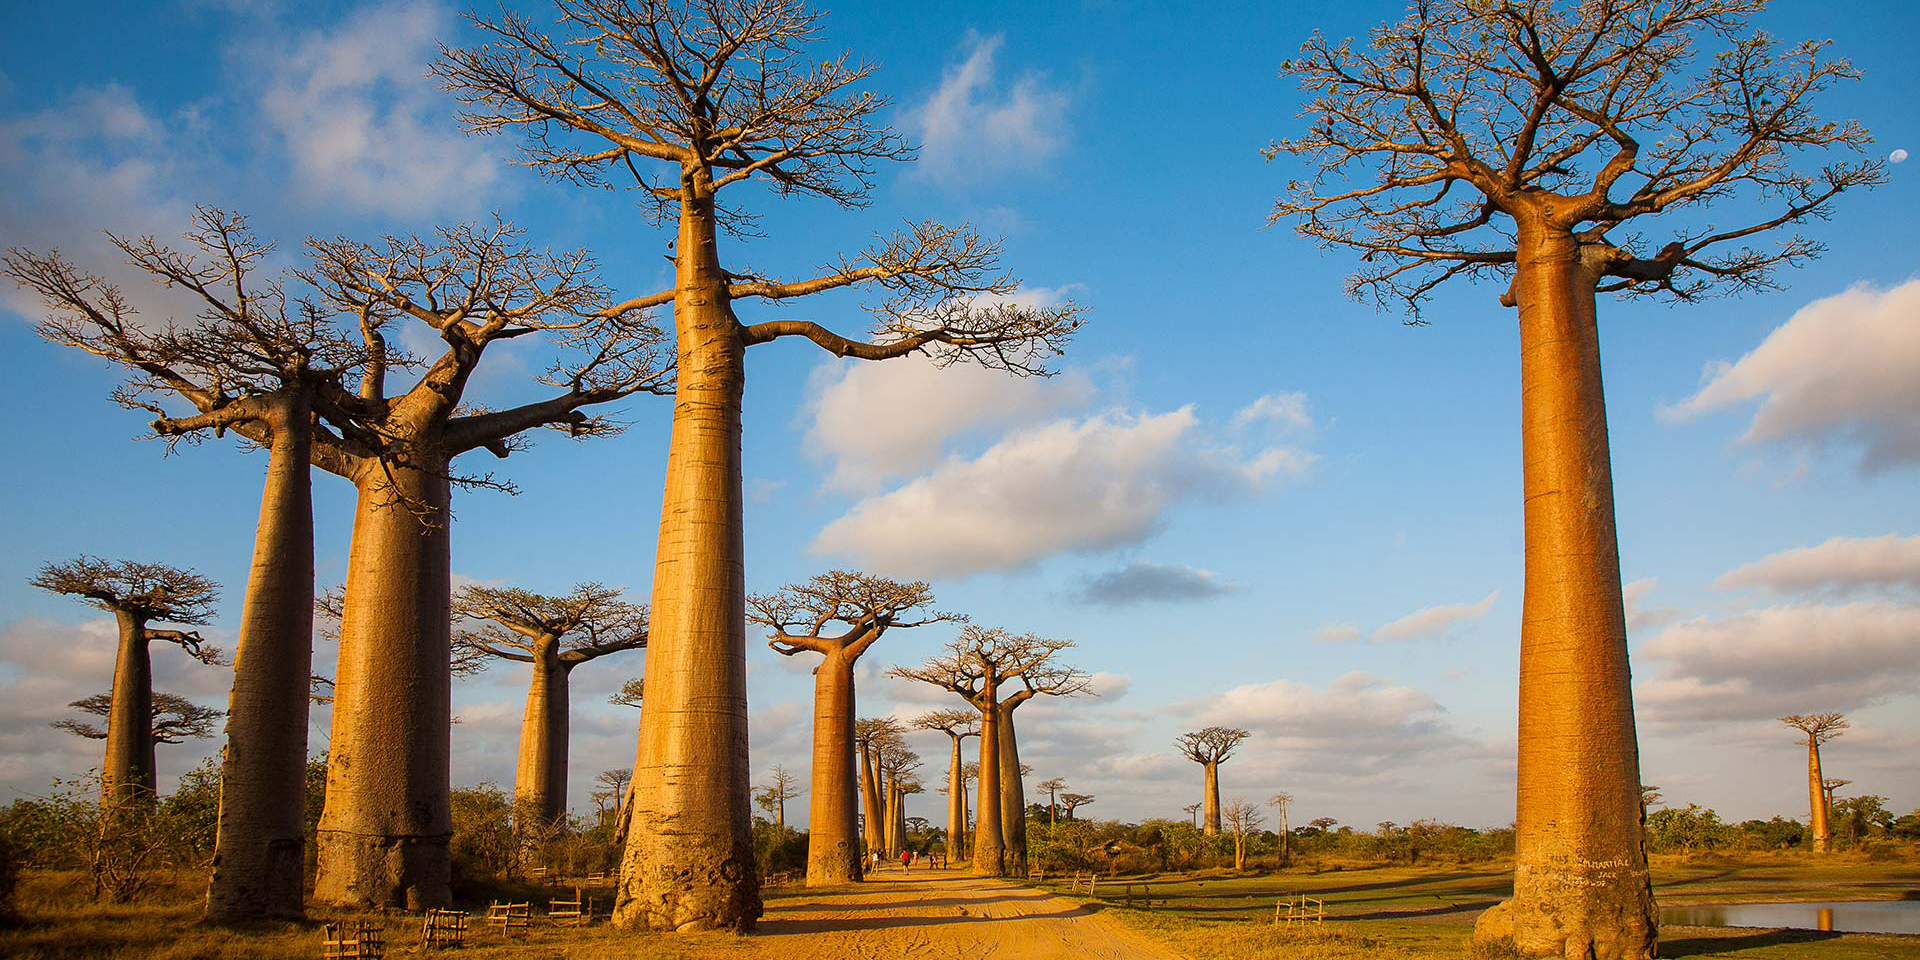 Deze grote indrukwekkende Baobab Bomen vormen een zeer fotogeniek geheel. 
                 Op Madagascar komen maar liefst 7 soorten Baobabbomen voor terwijl op het 
                 vaste land van Afrika slechts 1 soort voorkomt.